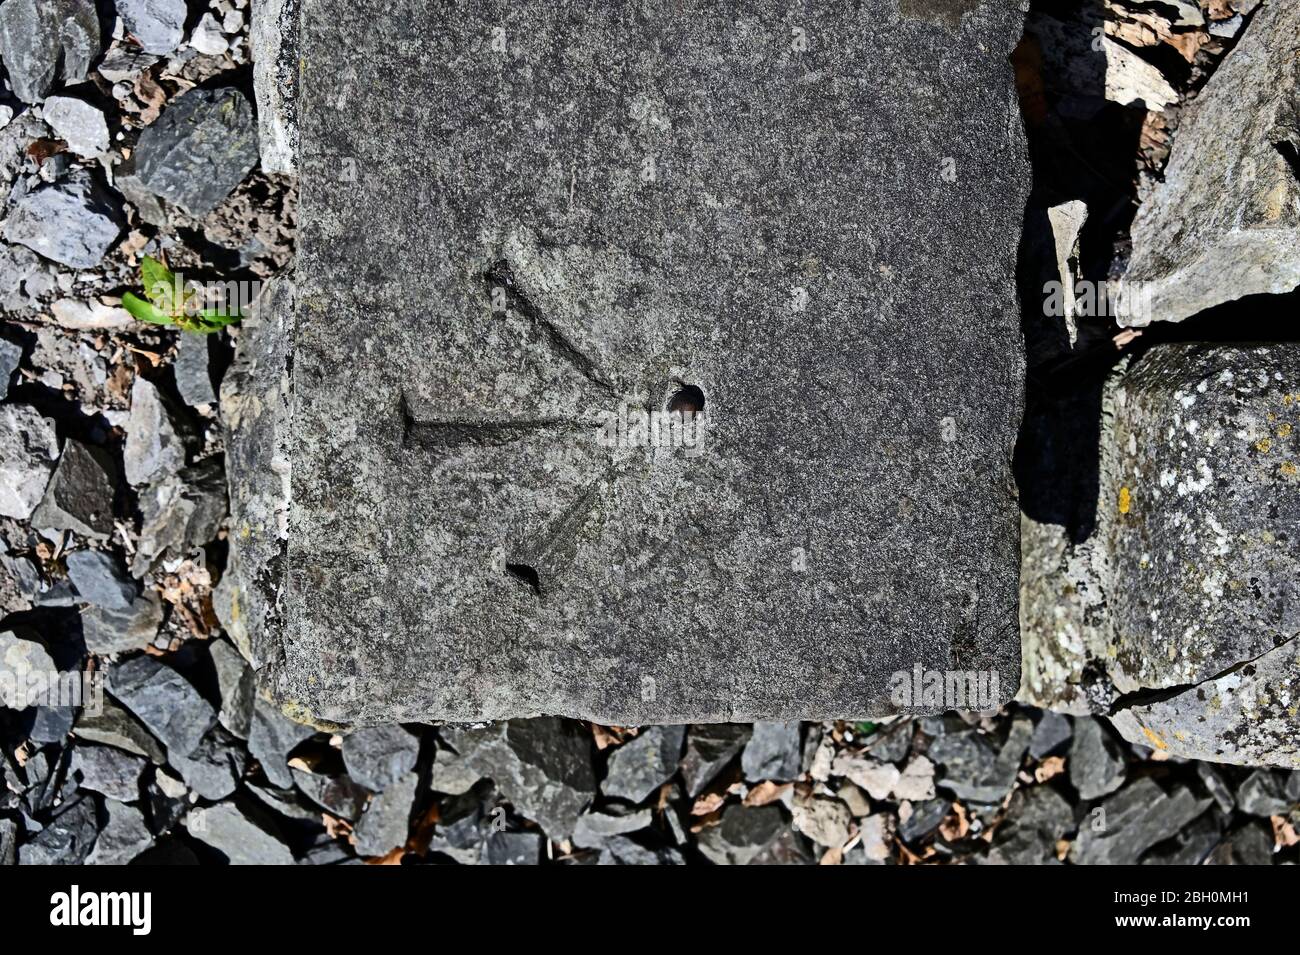 Benchmark on stone slab. Greenside, Kendal, Cumbria, England, United Kingdom, Europe. Stock Photo